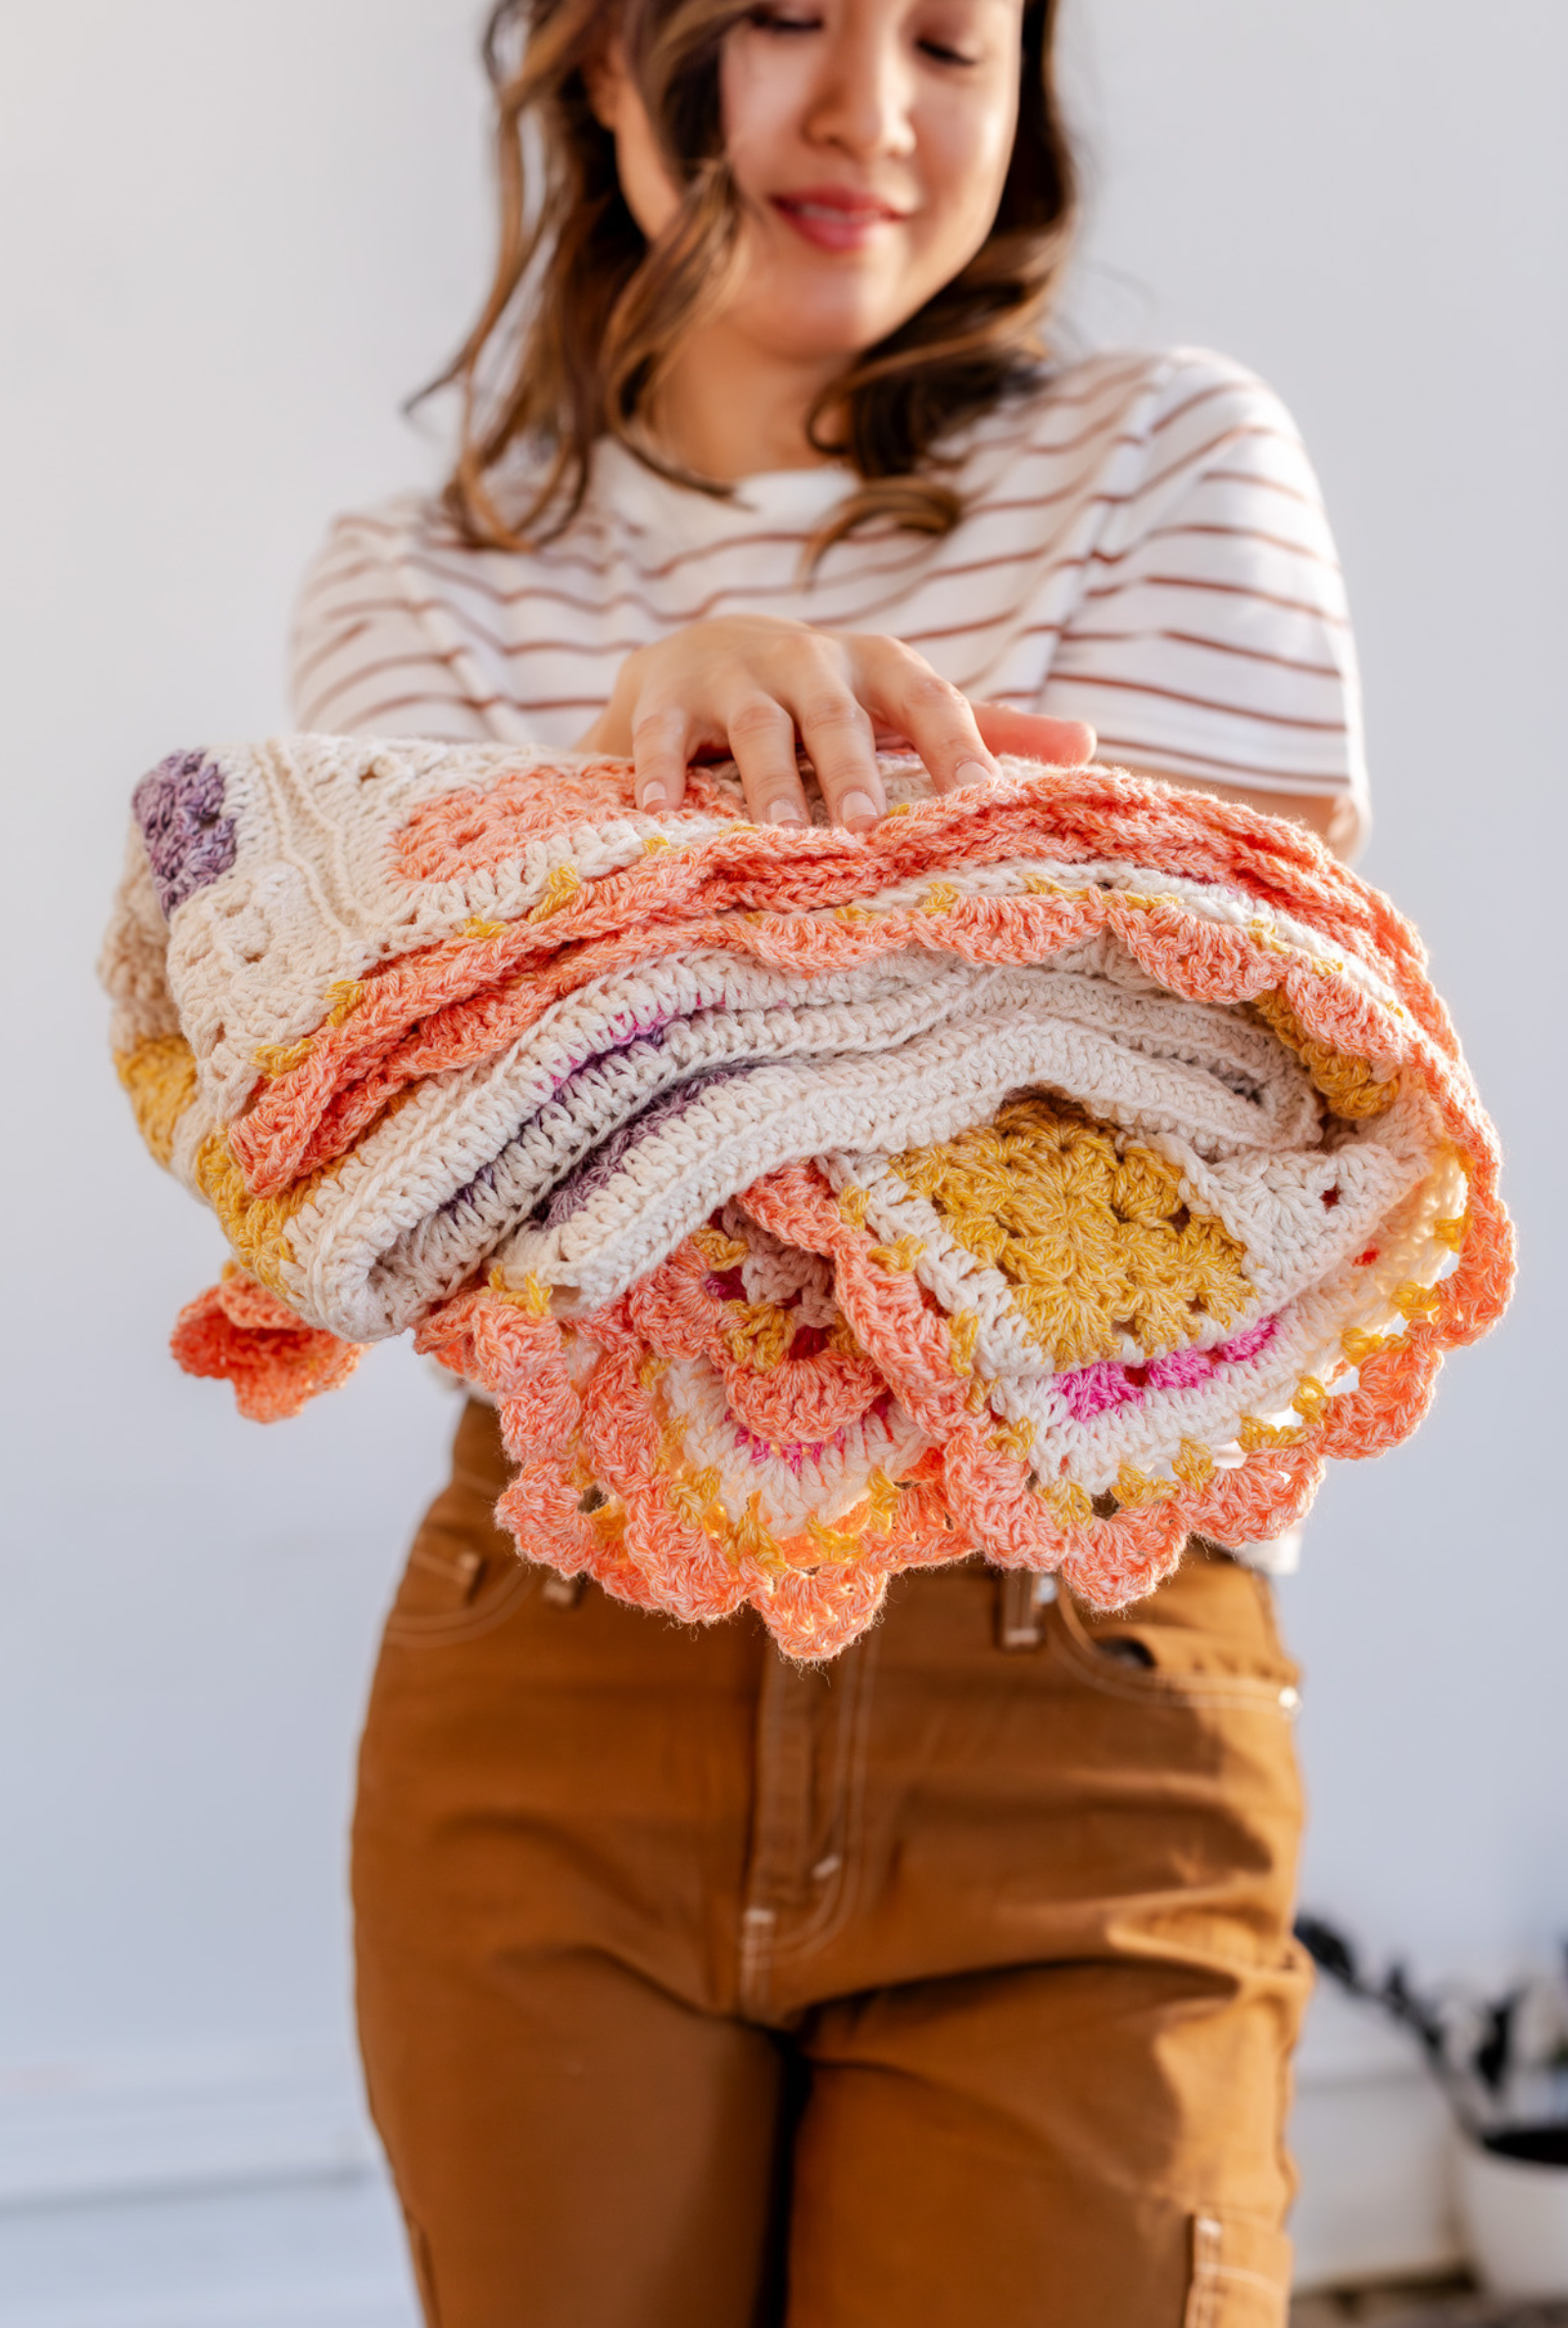 XO Blanket // Crochet PDF Pattern